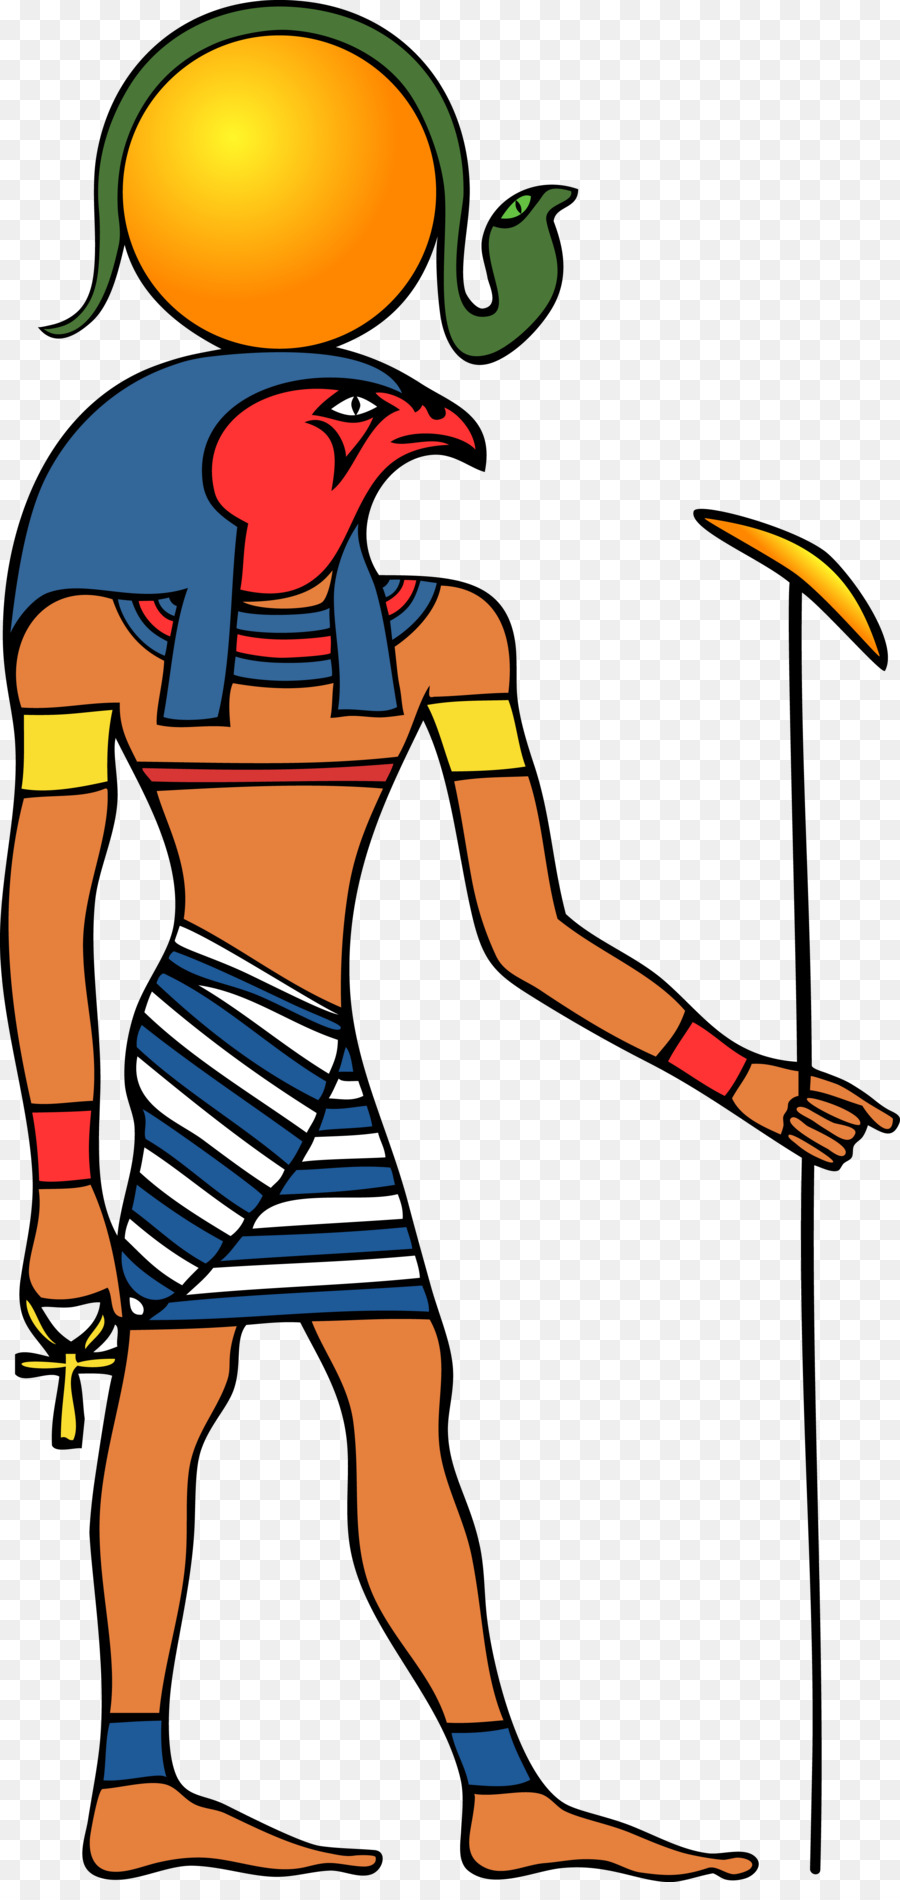 Amon gods. Бог солнца Амон ра. Бог Амон ра в древнем Египте. Амон-ра Бог солнца в древнем Египте. Египетский Бог Амон рва.